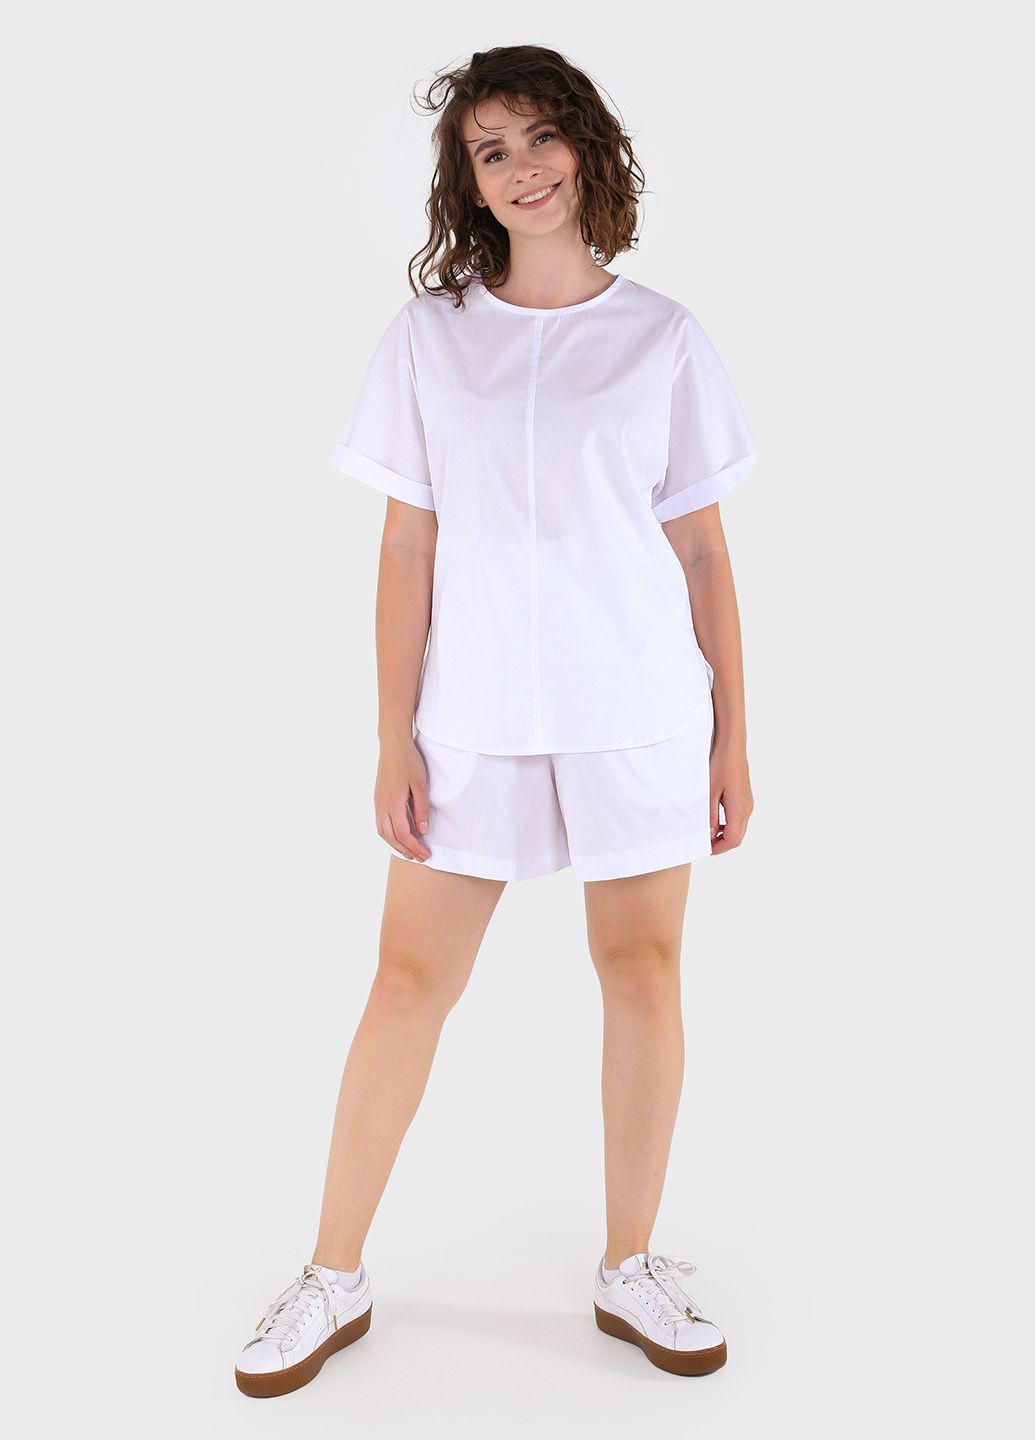 Купить Оверсайз хлопковая футболка женская белого цвета Merlini Ливорно 800000041, размер 42-44 в интернет-магазине